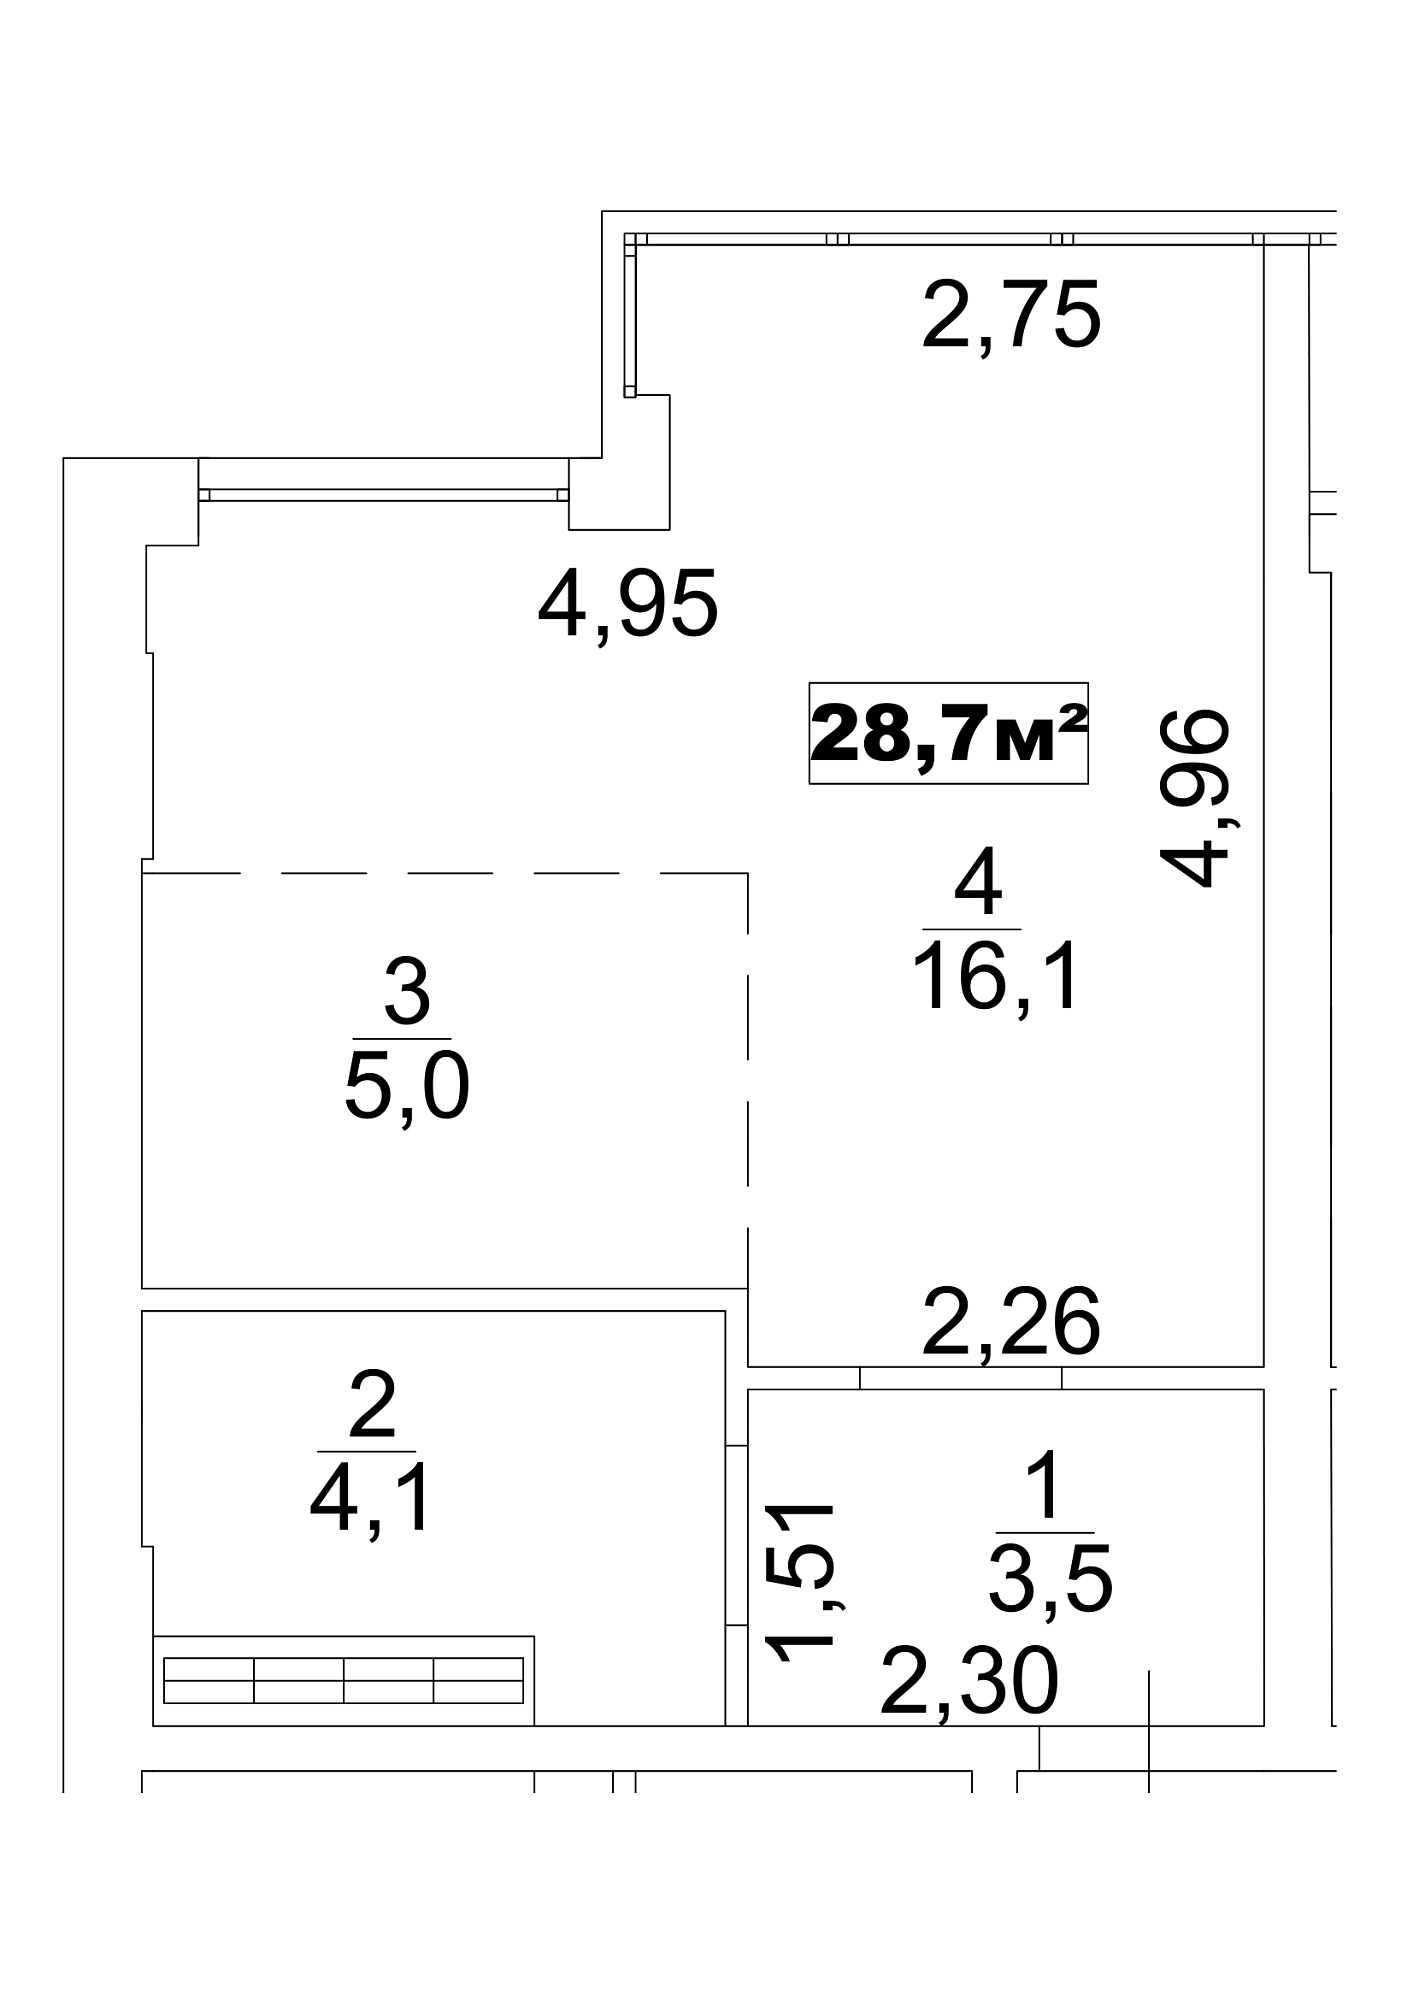 Планування Smart-квартира площею 28.7м2, AB-13-06/0045б.